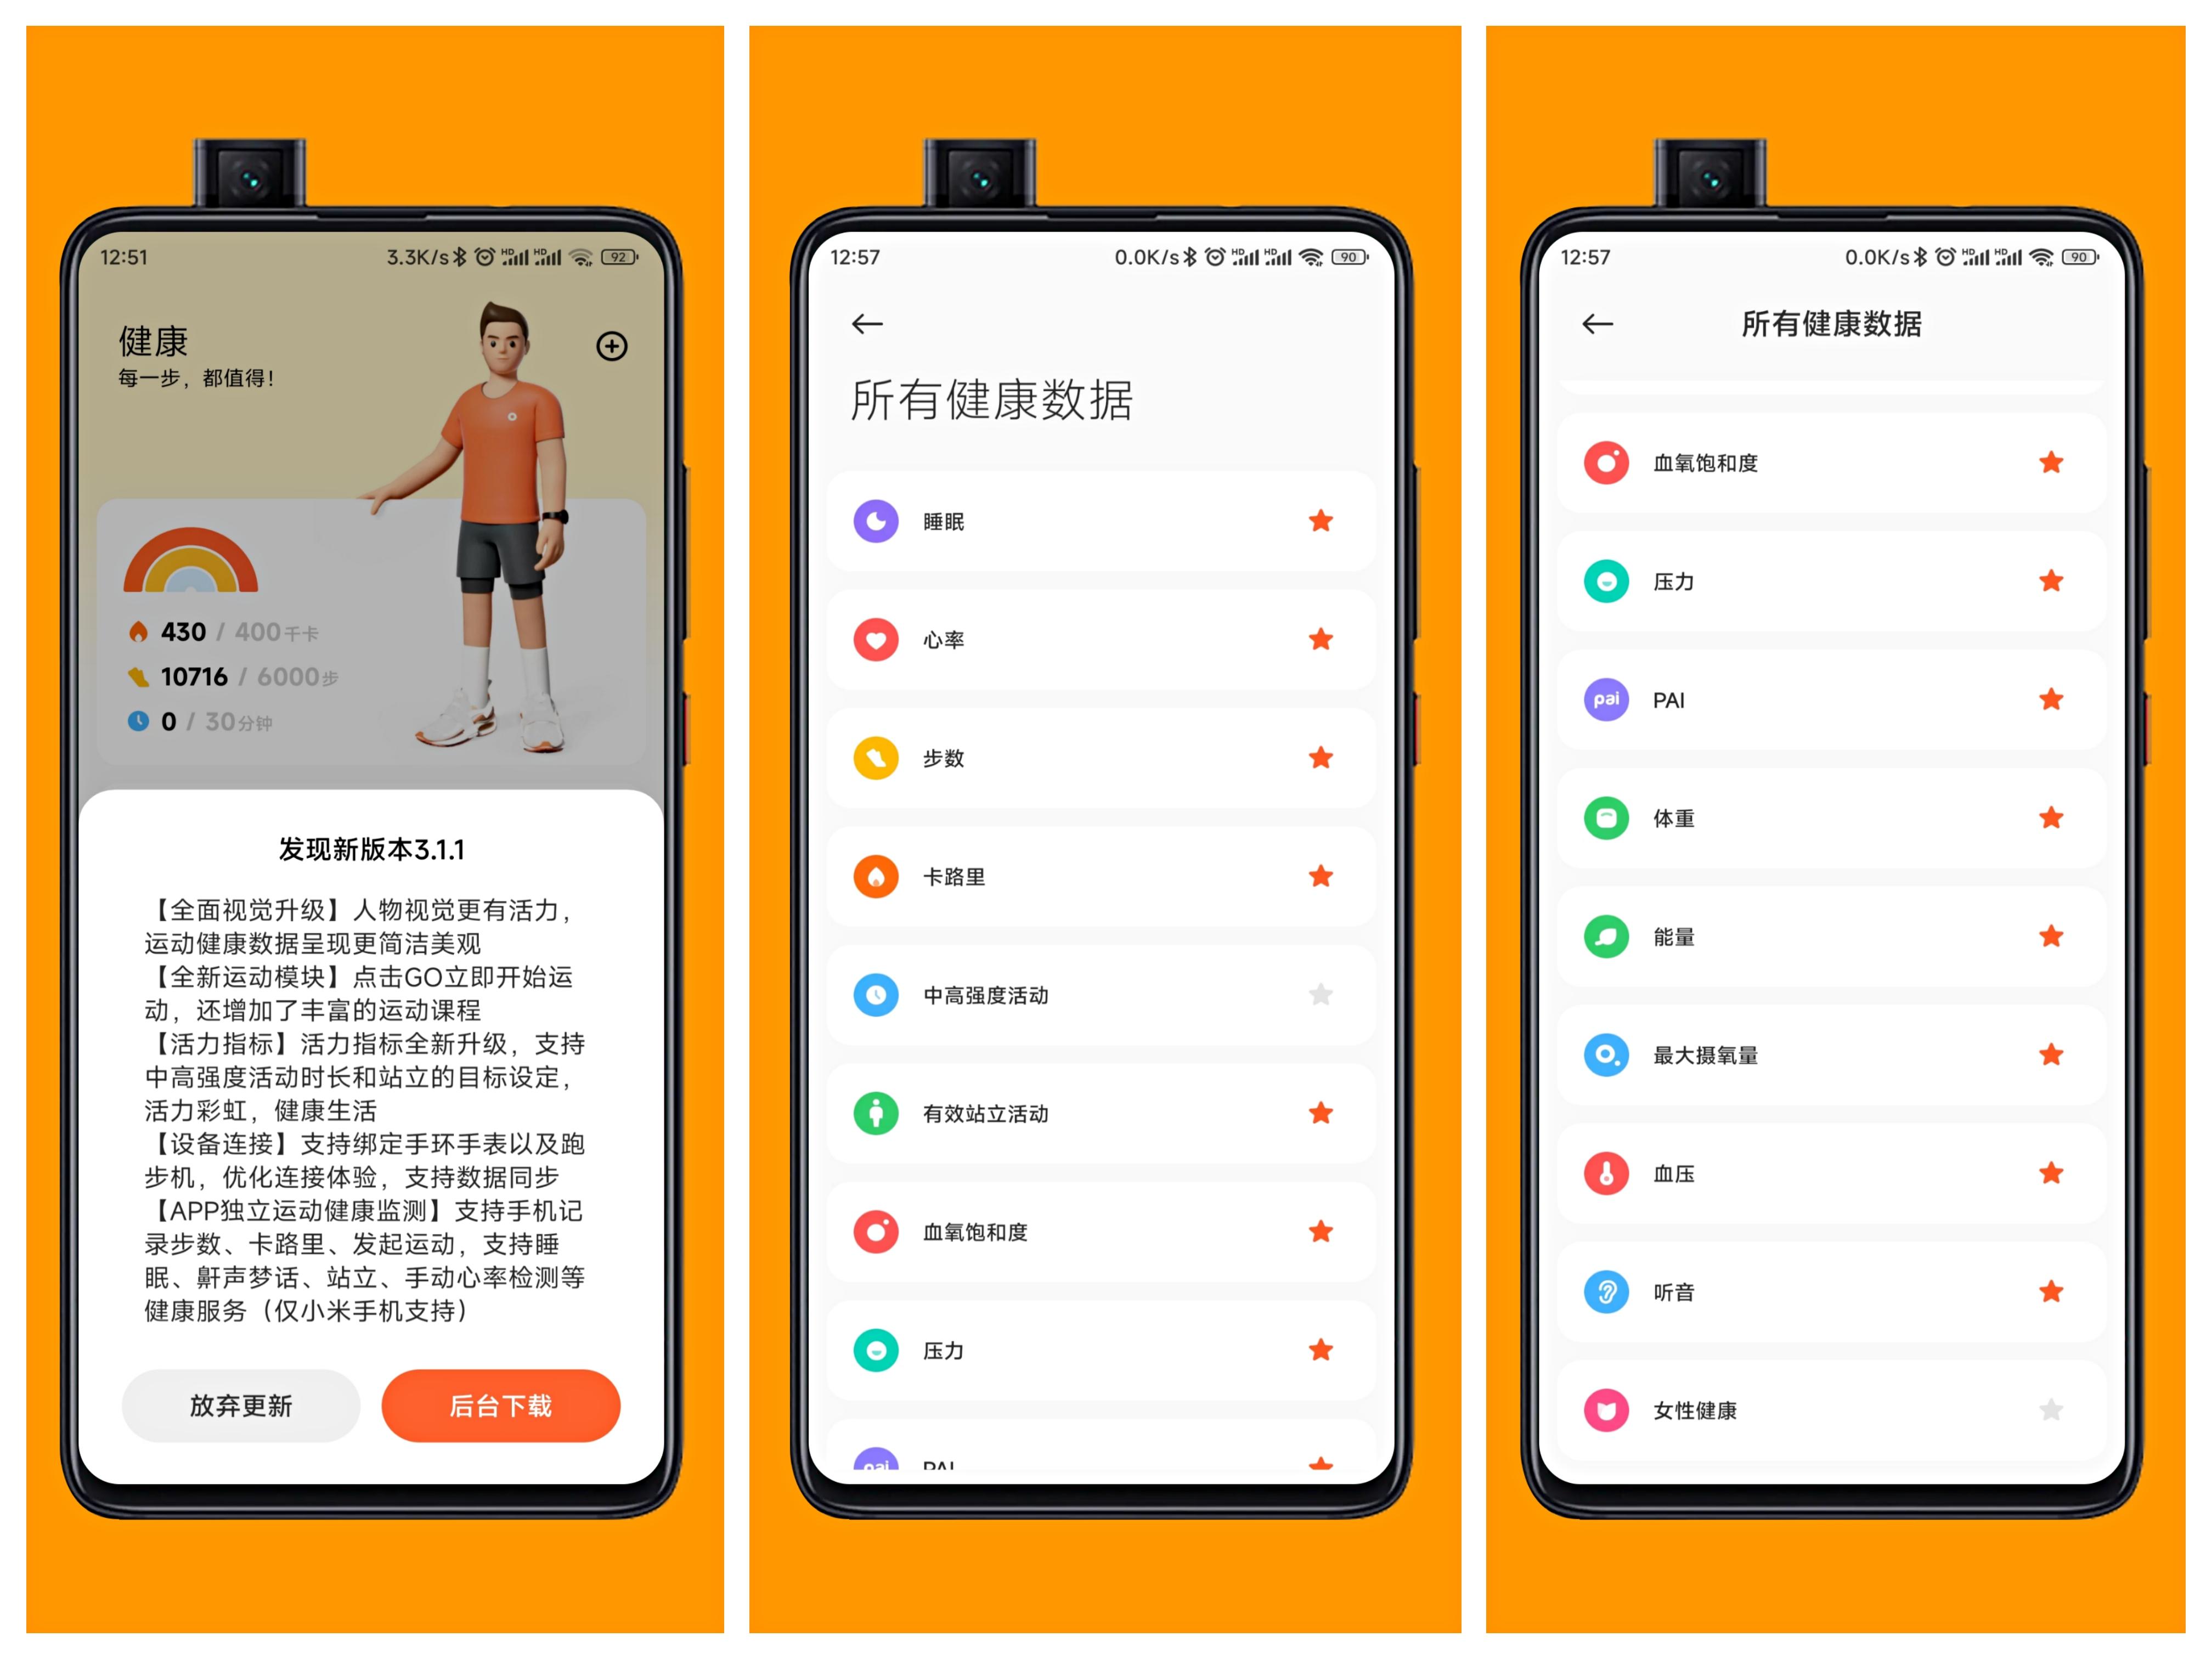 小米运动app是由华米开发,能绑定小米手环,小米体脂/体重秤等设备